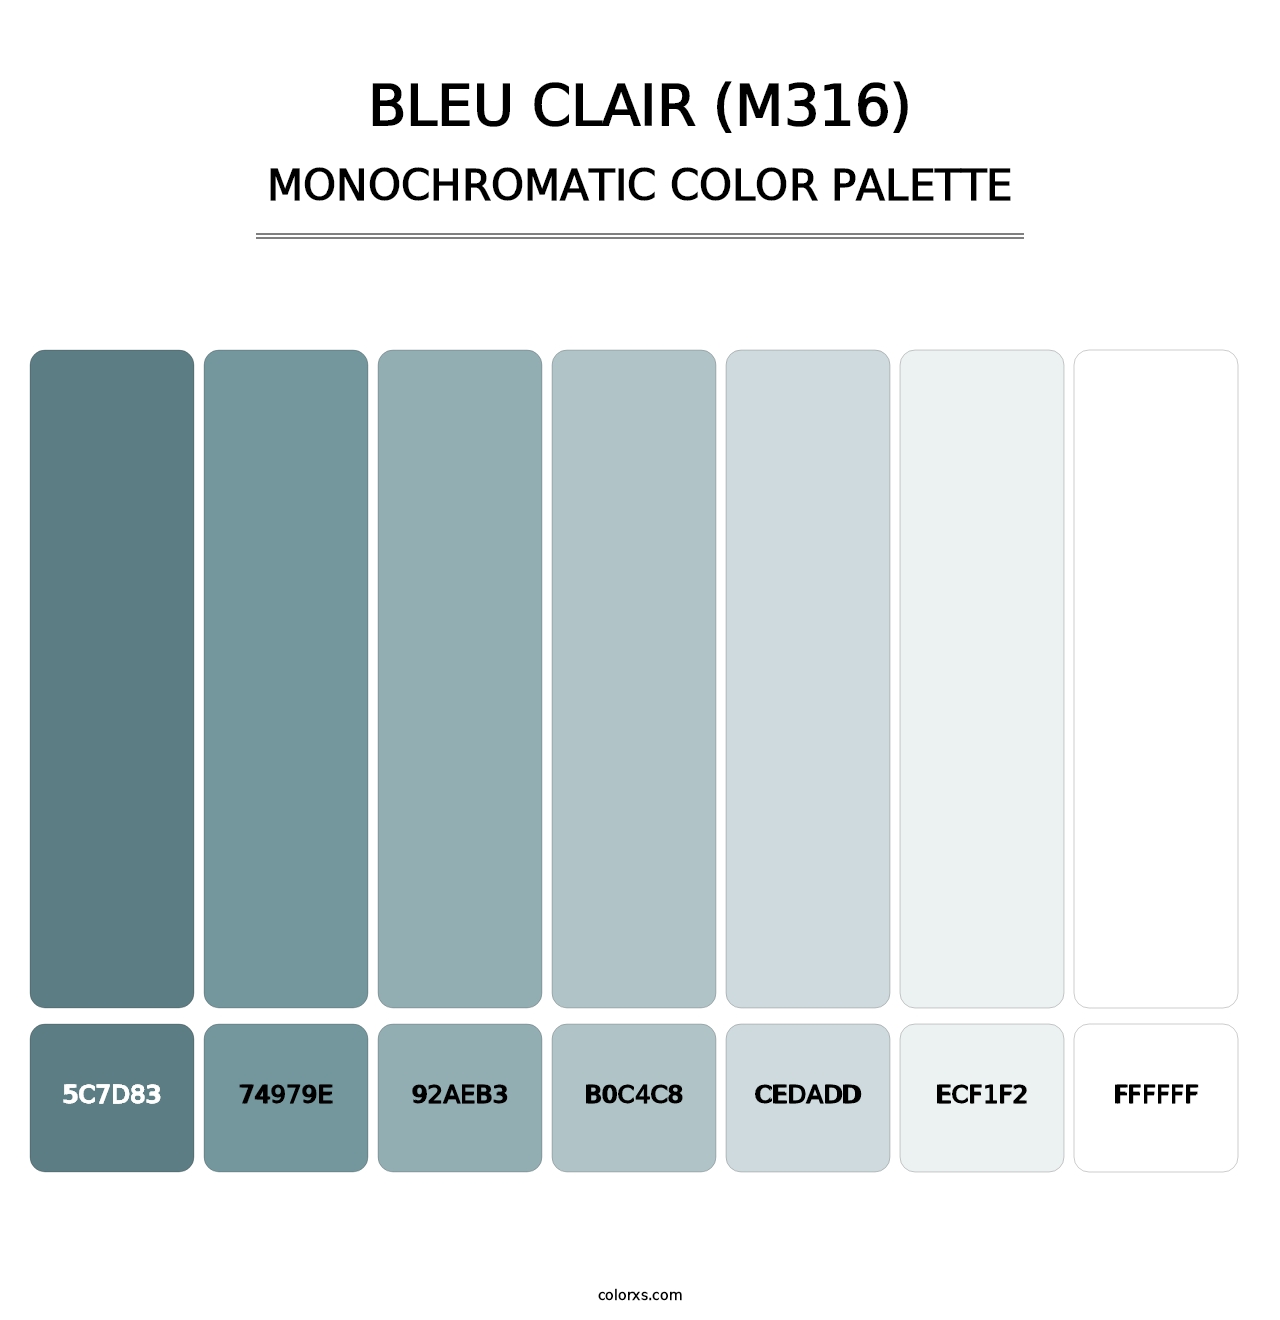 Bleu Clair (M316) - Monochromatic Color Palette